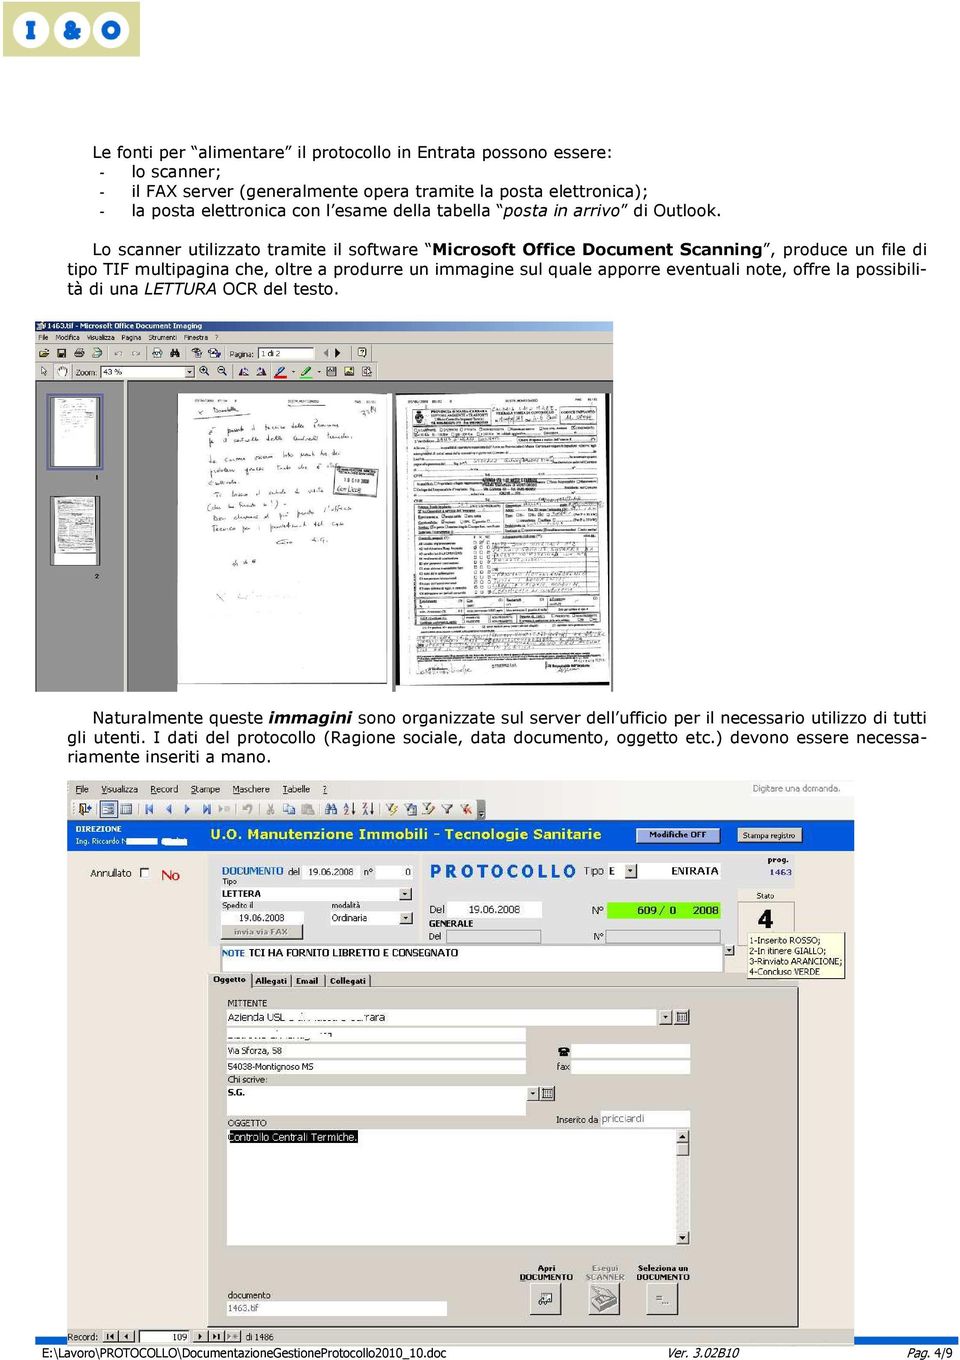 Lo scanner utilizzato tramite il software Microsoft Office Document Scanning, produce un file di tipo TIF multipagina che, oltre a produrre un immagine sul quale apporre eventuali note, offre la